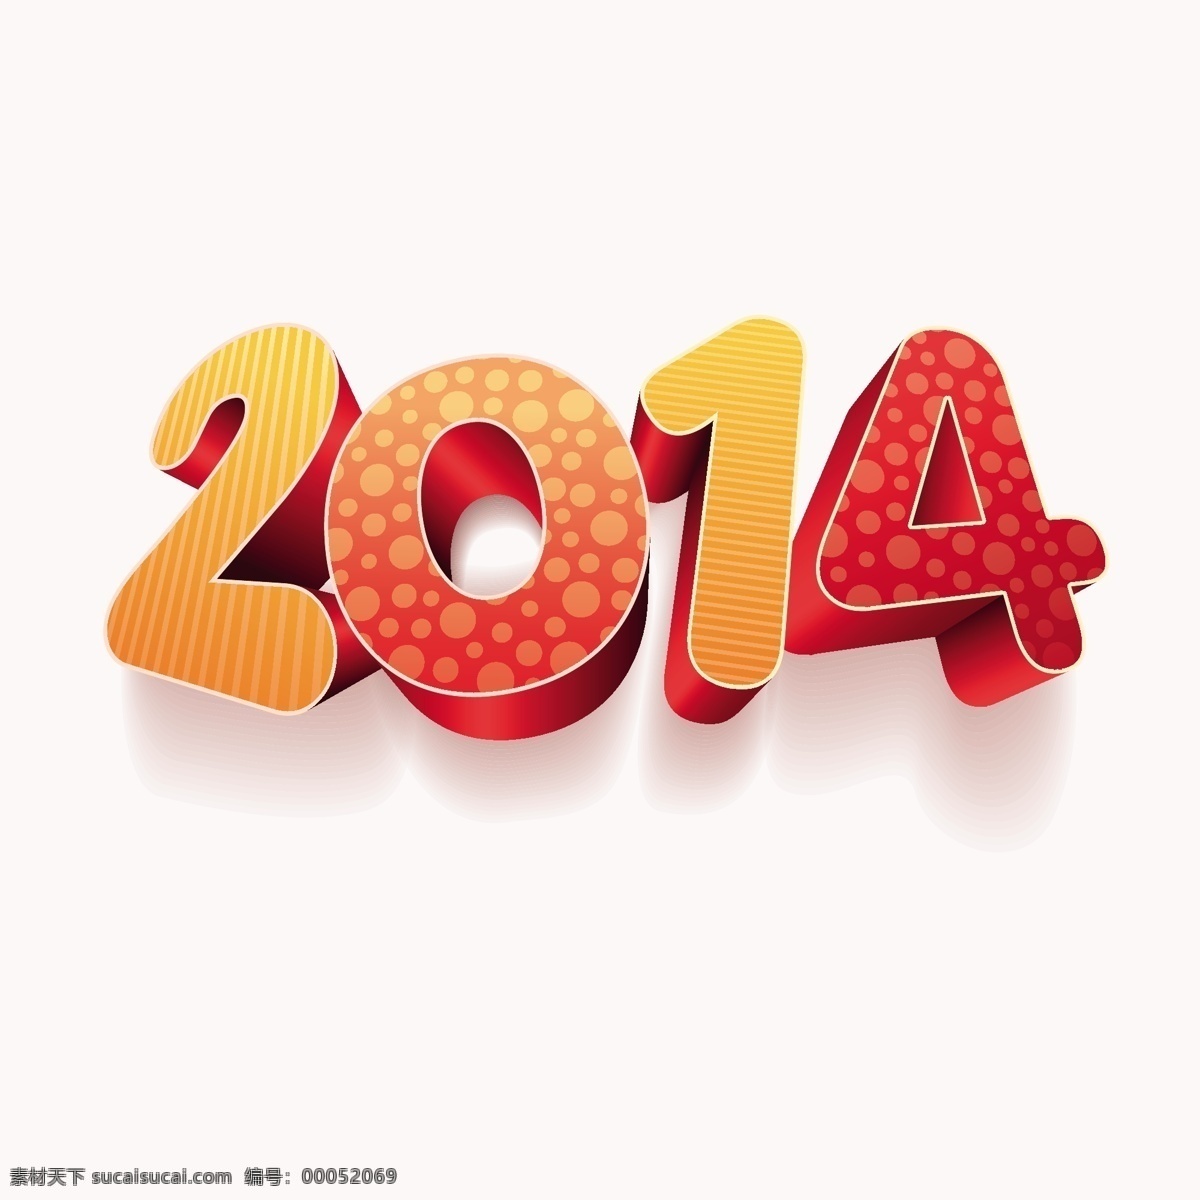 新 年 2014 创造性 矢量 图形 创意 矢量图形 矢量节日 新的一年 节日素材 其他节日